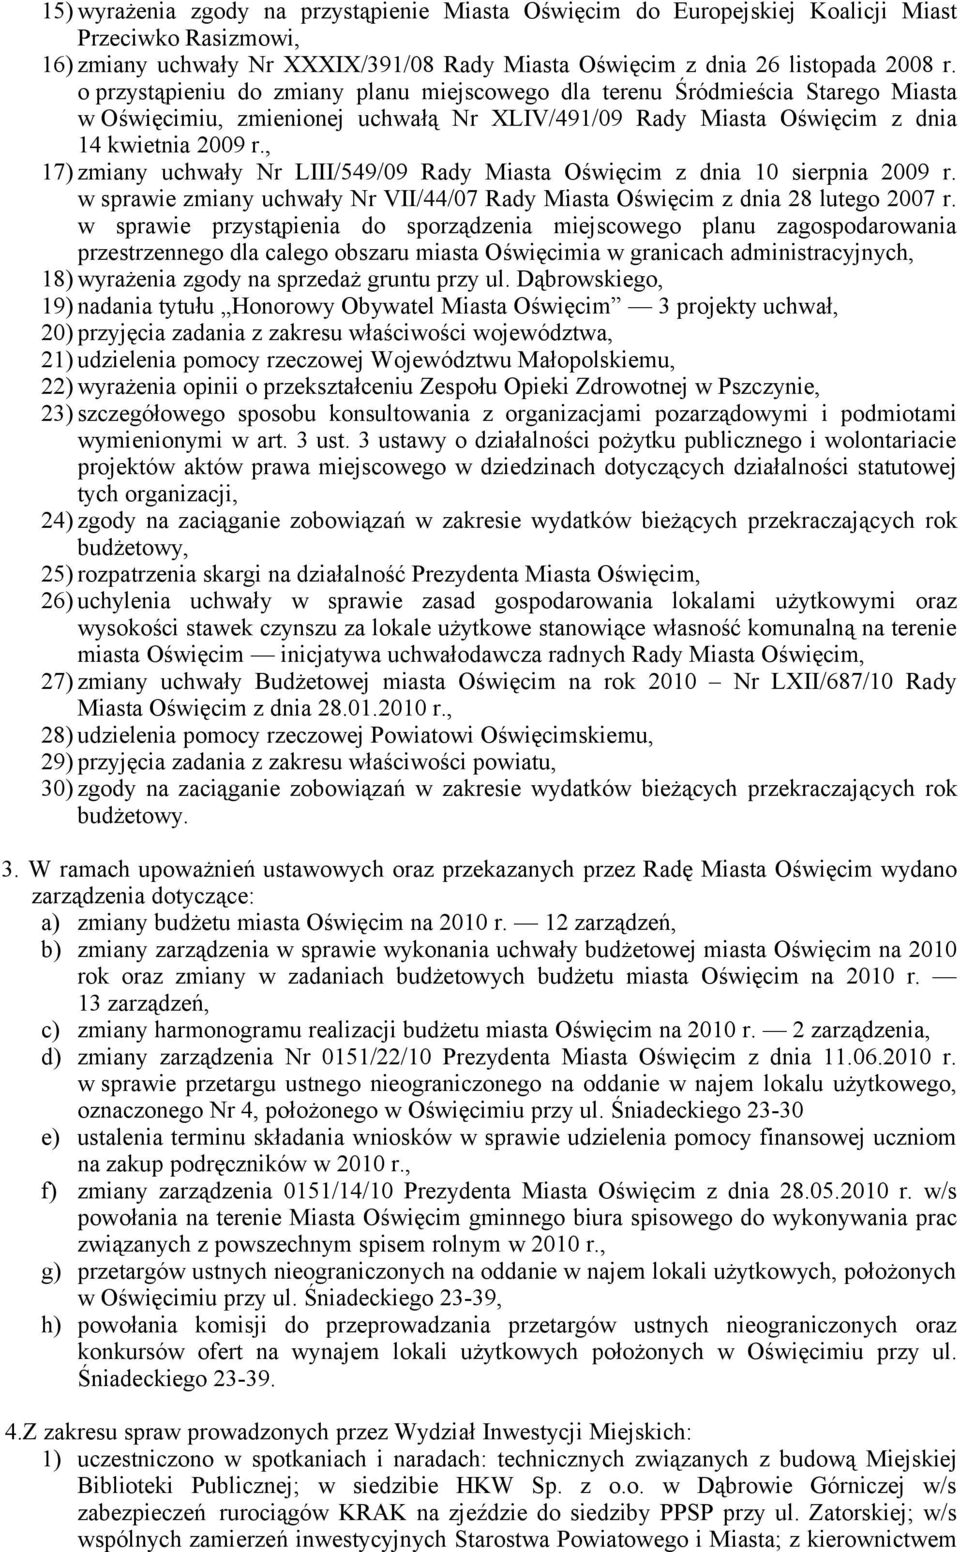 , 17) zmiany uchwały Nr LIII/549/09 Rady Miasta Oświęcim z dnia 10 sierpnia 2009 r. w sprawie zmiany uchwały Nr VII/44/07 Rady Miasta Oświęcim z dnia 28 lutego 2007 r.